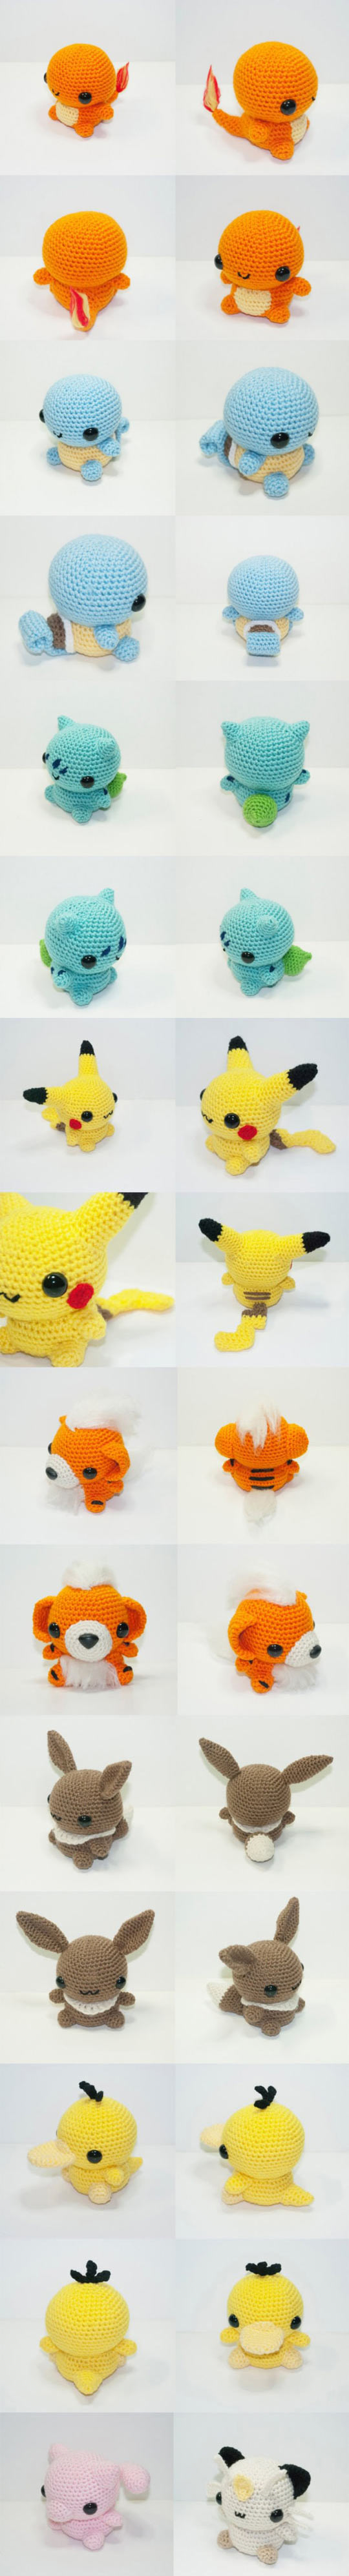 Knitted Pokémons